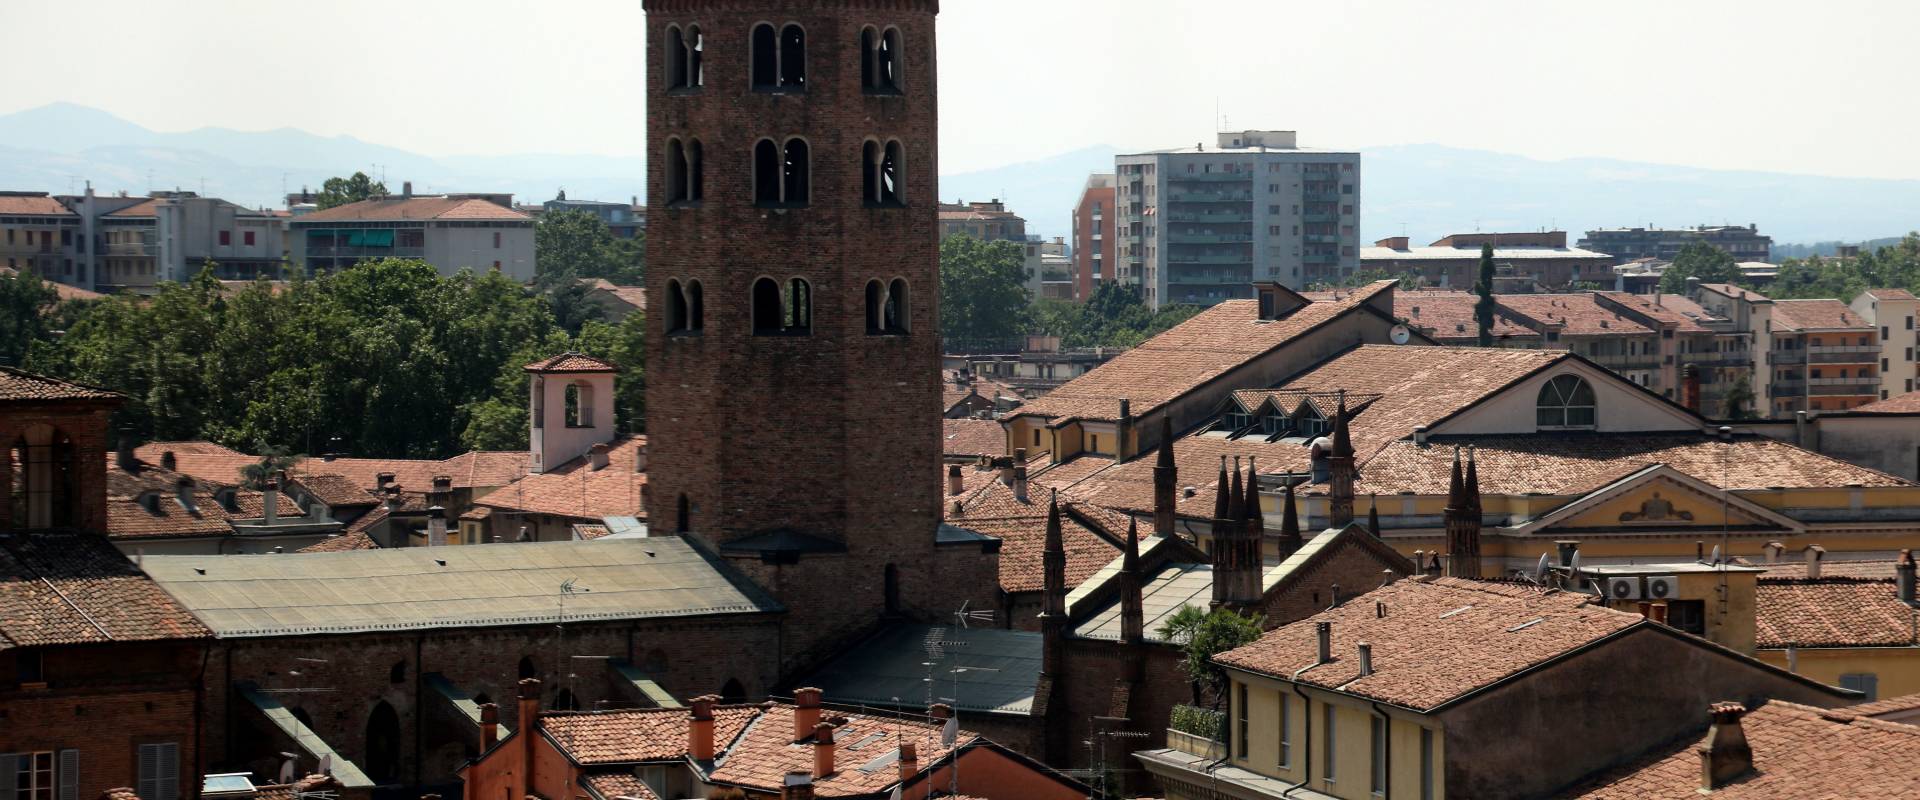 Basilica di Sant'Antonino (Piacenza), campanile 06 foto di Mongolo1984